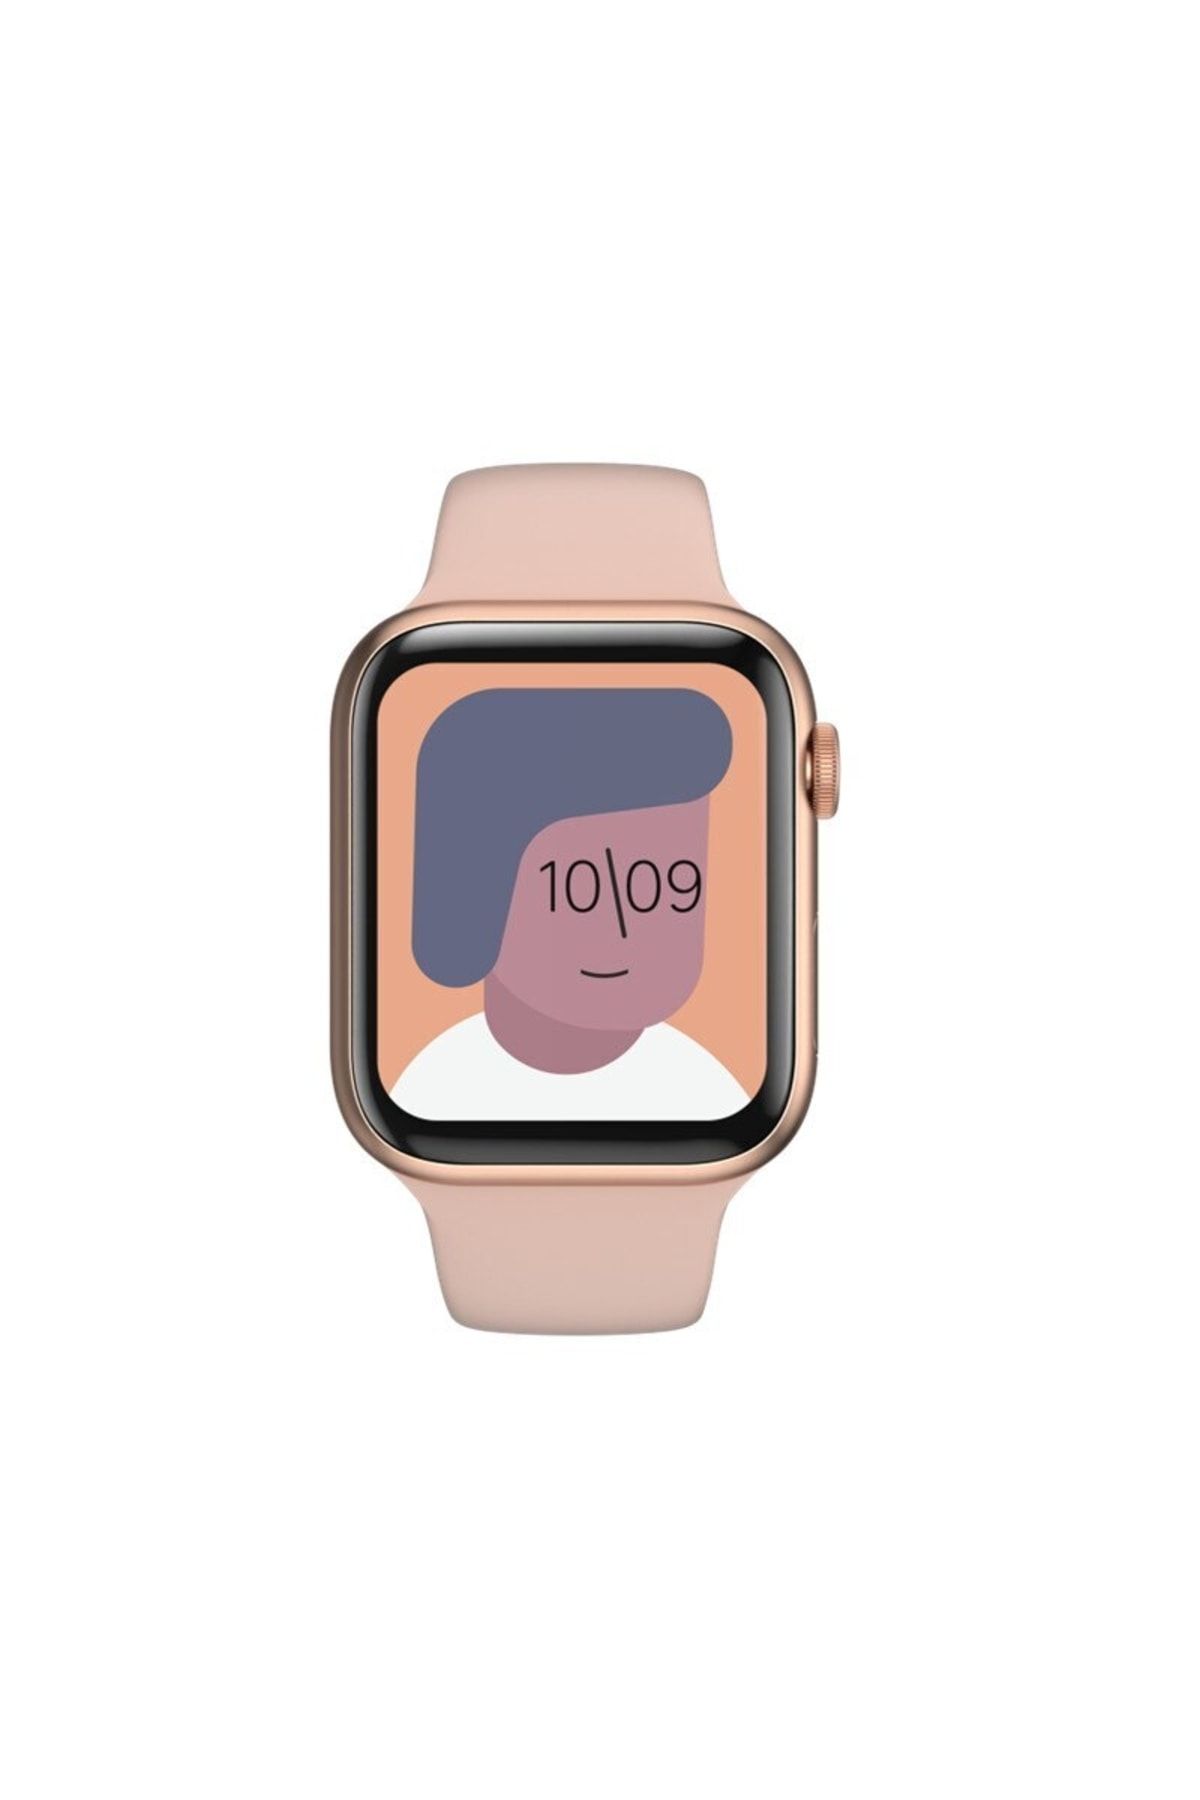 pazariz Watch 7 Plus Watch 2023 Yeni Akıllı Saat Siri Bluetooth Çağrı Android Ios